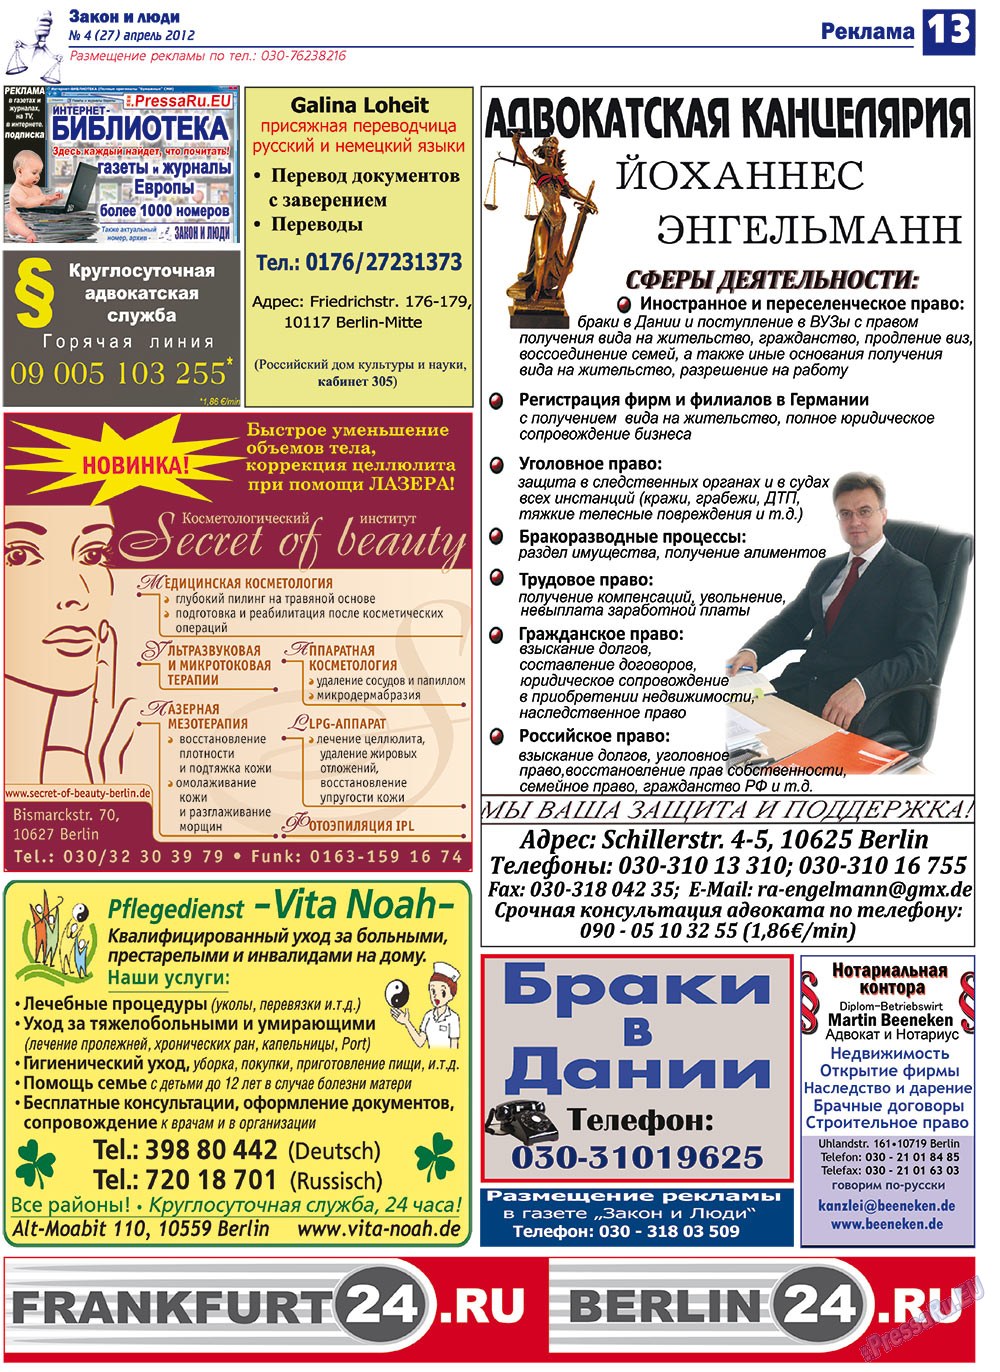 Закон и люди, газета. 2012 №4 стр.13